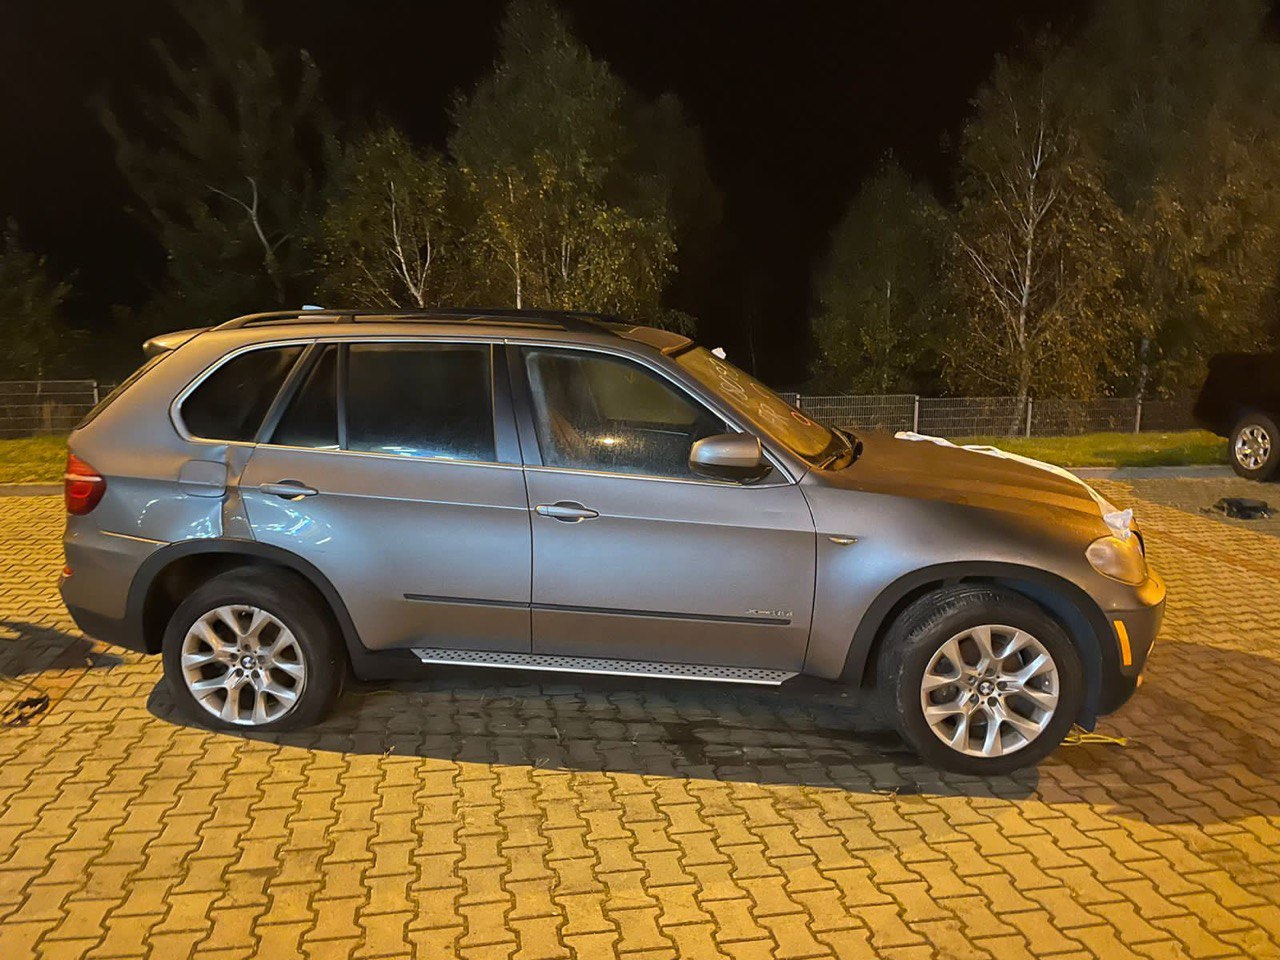 Львівська митниця вилучила три люксові автомобіля вартістю 700 000 грн